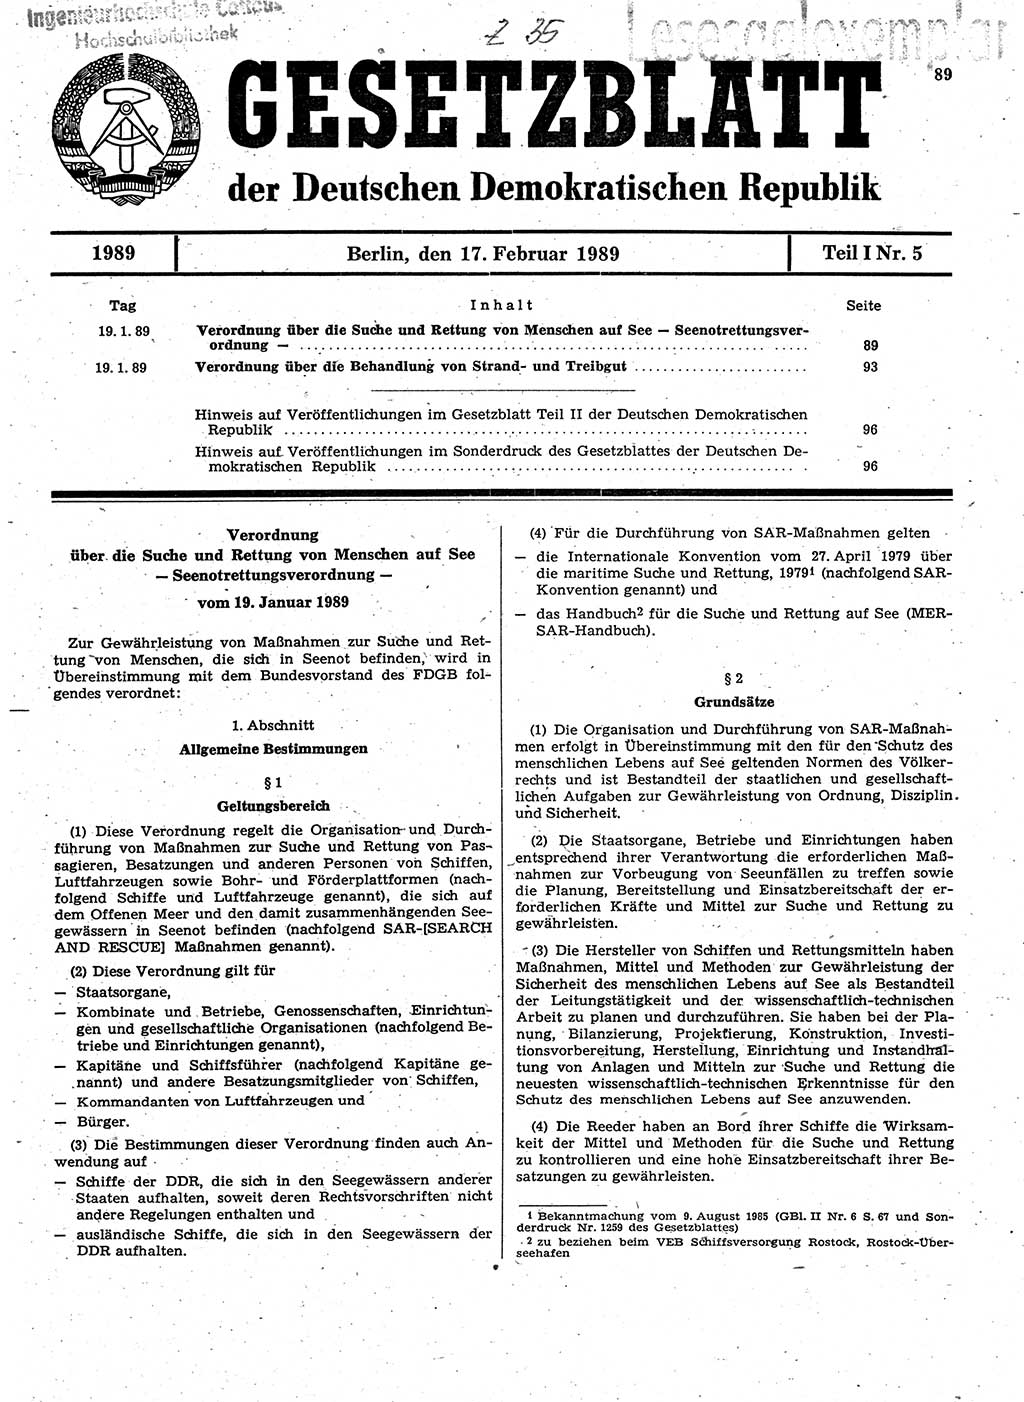 Gesetzblatt (GBl.) der Deutschen Demokratischen Republik (DDR) Teil Ⅰ 1989, Seite 89 (GBl. DDR Ⅰ 1989, S. 89)